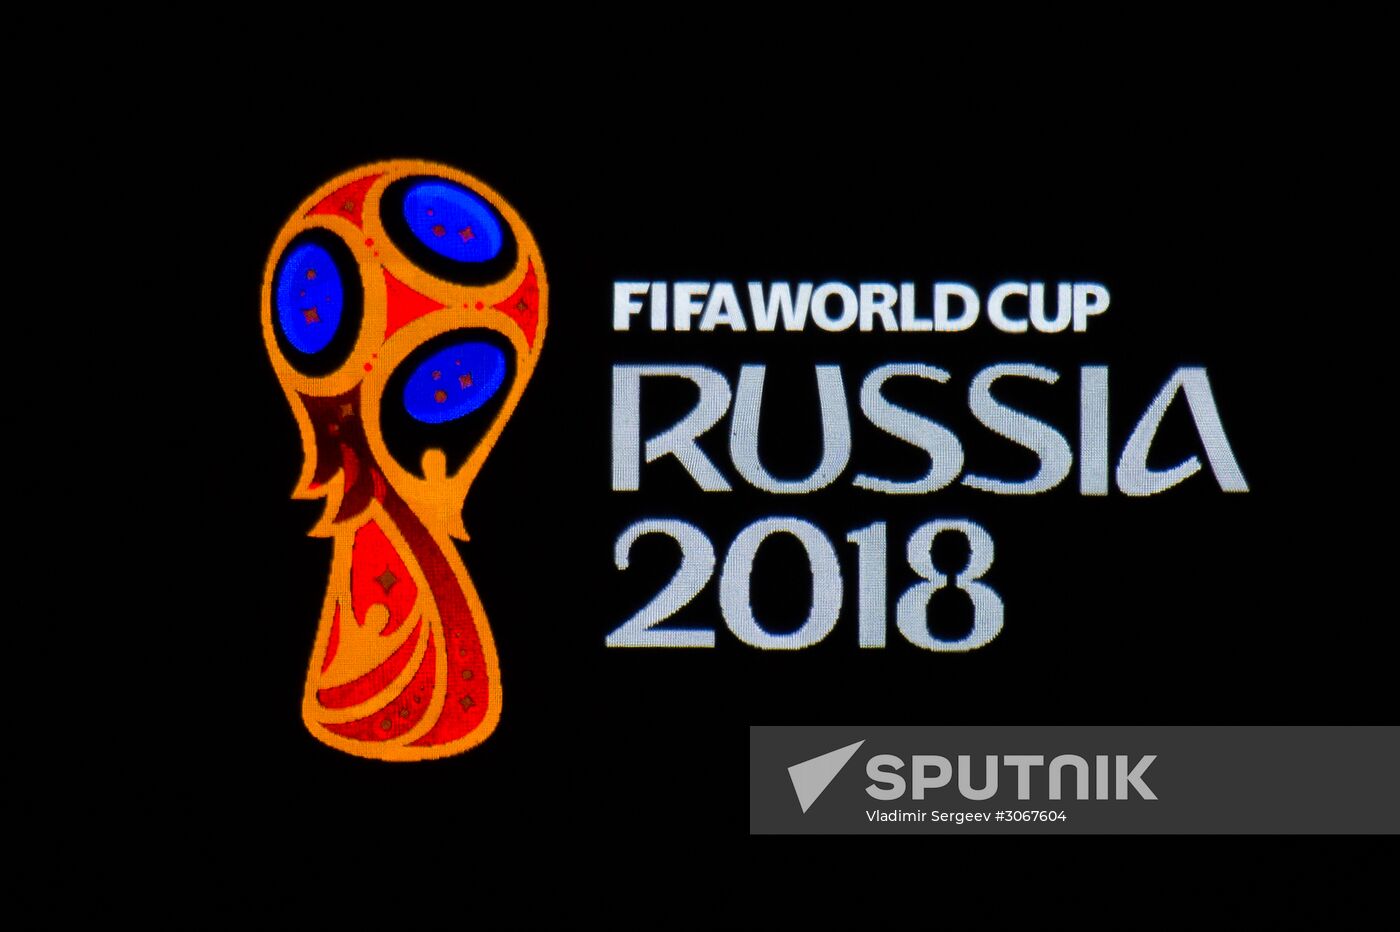 2018 FIFA World Cup emblem